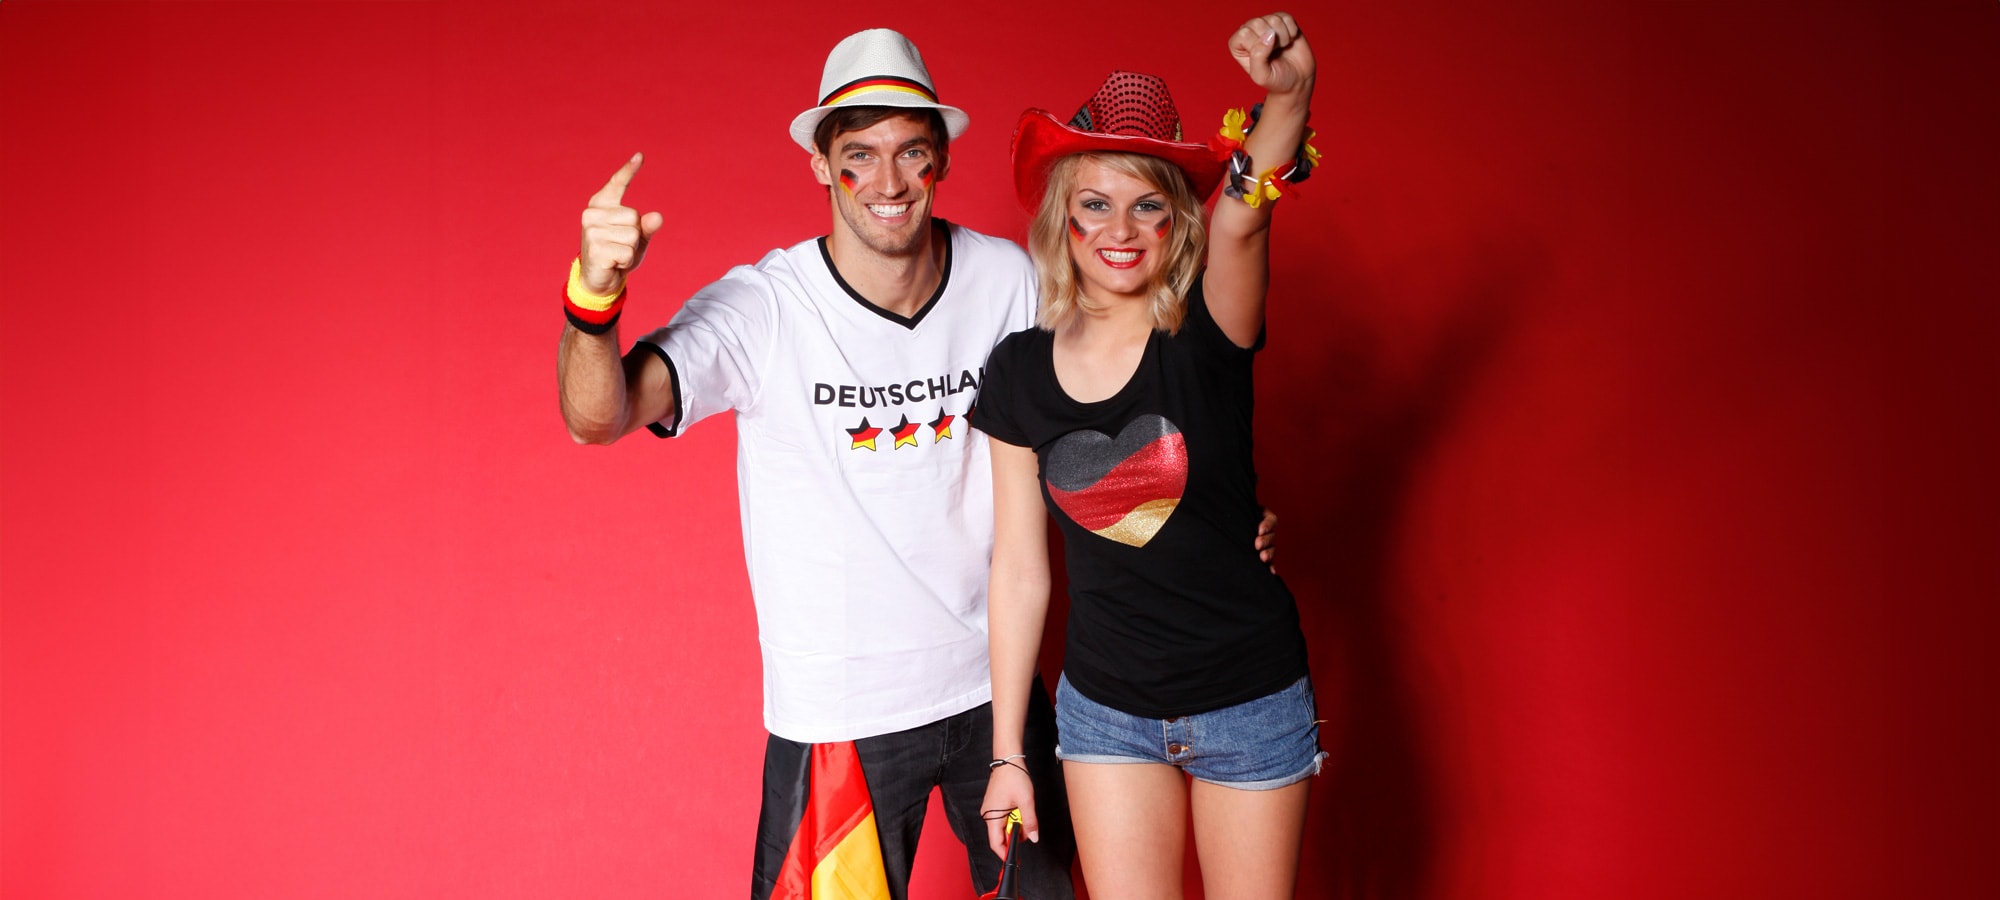 Deutschland Kostüme und Fanartikel für Paare